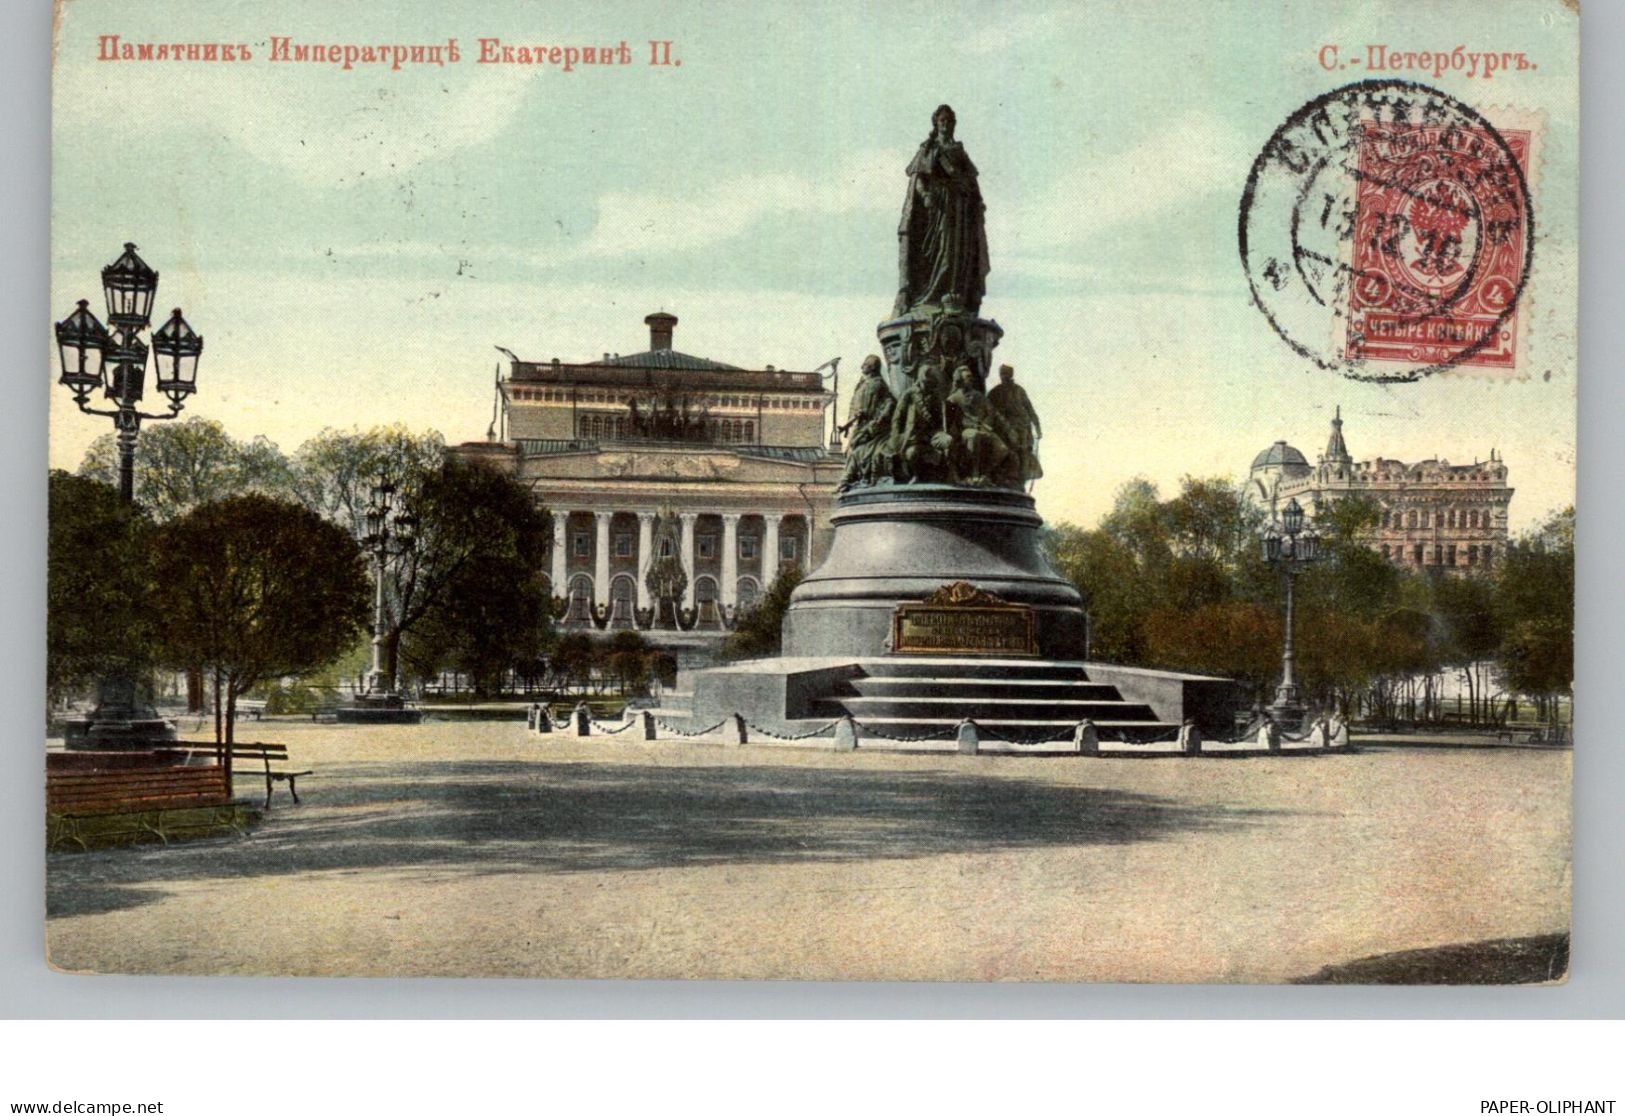 RU 190000 SANKT PETERSBURG, Katharina II Denkmal, 1910 - Russland